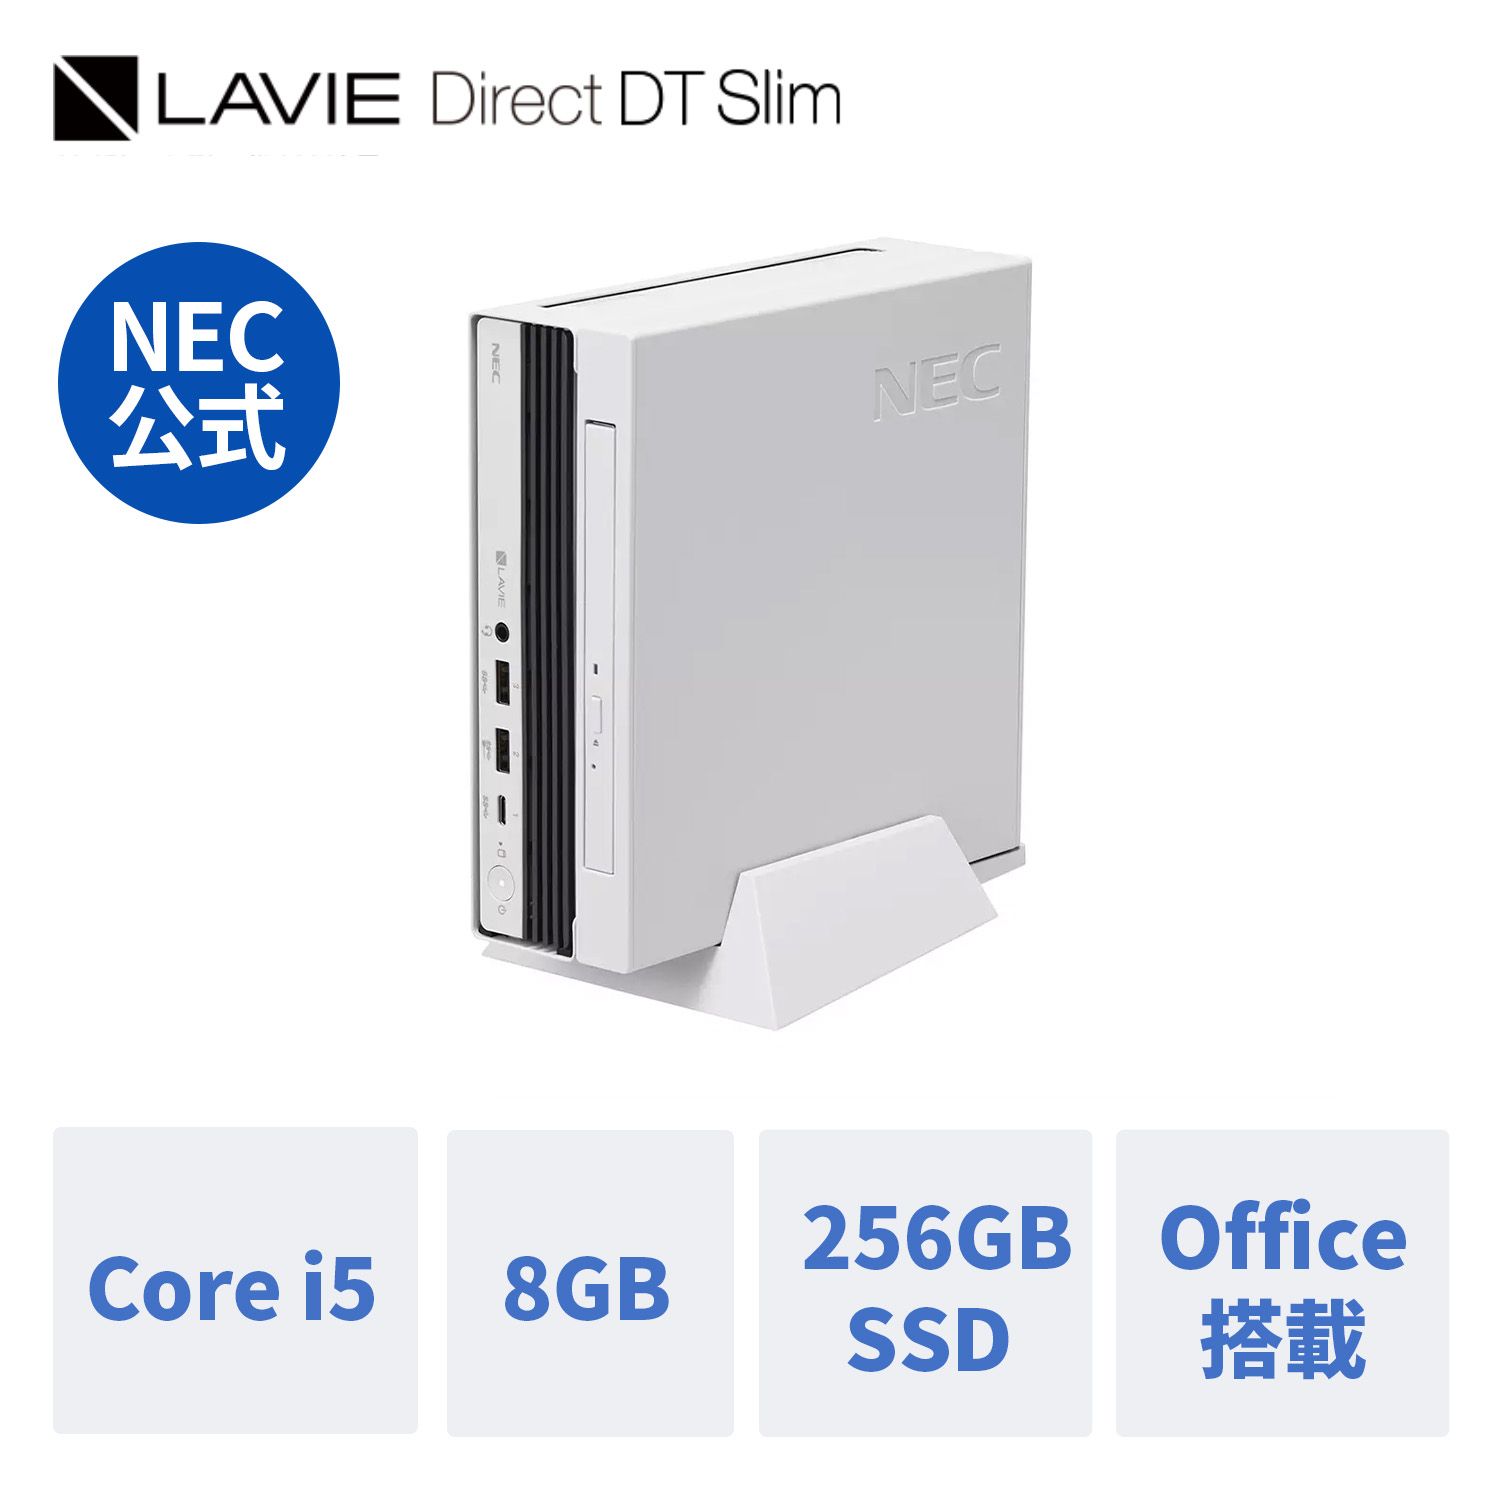 【Norton1】【5/9-DEAL10%+最大P26倍】【公式】 新品 NEC ミニPC 小型 デスクトップパソコン office付き LAVIE Direct DTslim i5-13500T 8GBメモリ 256GB SSD 24インチ モニター Windows 11 Home 1年保証 送料無料 yxe